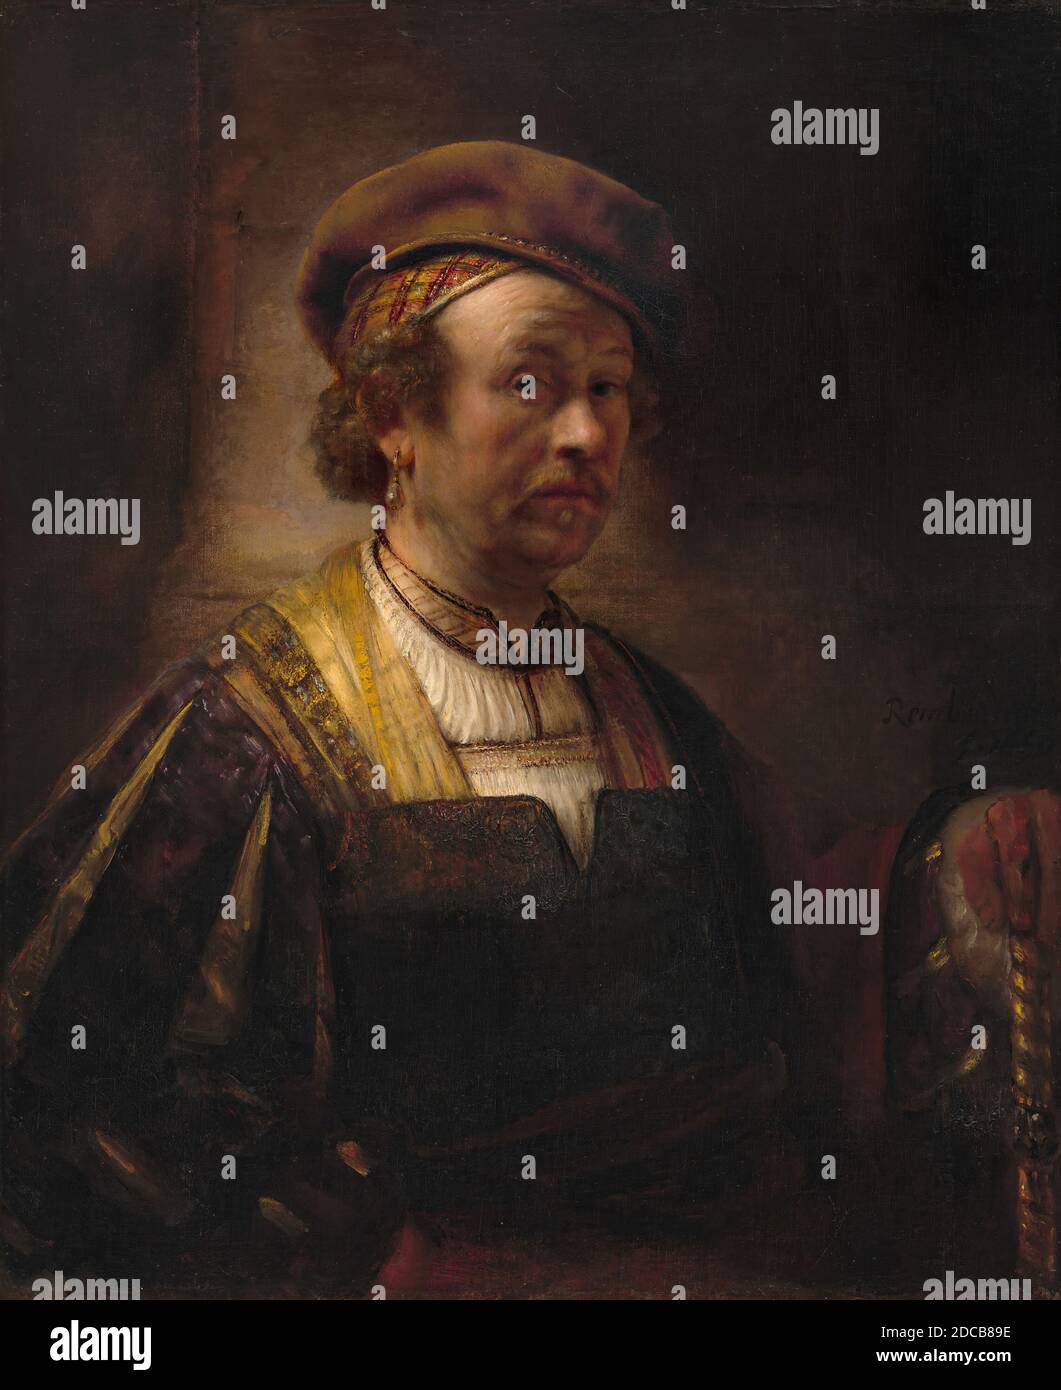 Olandese 17 ° secolo, (pittore), Rembrandt van Rijn, (artista correlato), olandese, 1606 - 1669, Ritratto di Rembrandt, 1650, olio su tela, totale: 92 x 75.5 cm (36 1/4 x 29 3/4 pollici), incorniciato: 125.1 x 107 x 11.4 cm (49 1/4 x 42 1/8 x 4 1/2 pollici Foto Stock